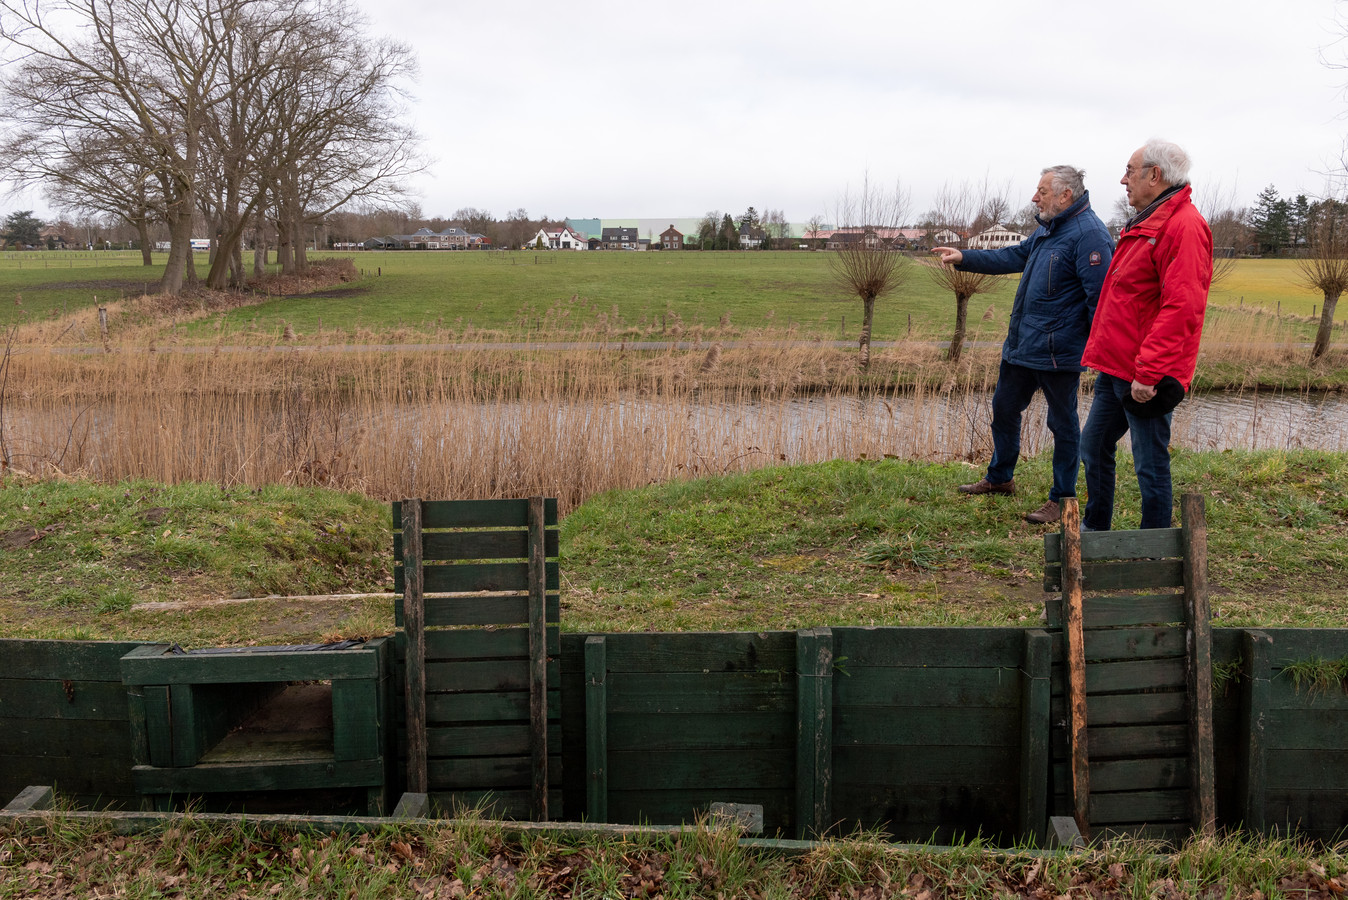 Buurtbewoners Nico de Haan (links) en Jan Ruijgrok, in de winter gefotografeerd, staan bij de loopgraven van de Grebbelinie. Op het weiland aan de overkant van de sloot komt een groot distributiecentrum van Modiform, is het plan. Op de achtergrond de dorpsrand van Scherpenzeel.